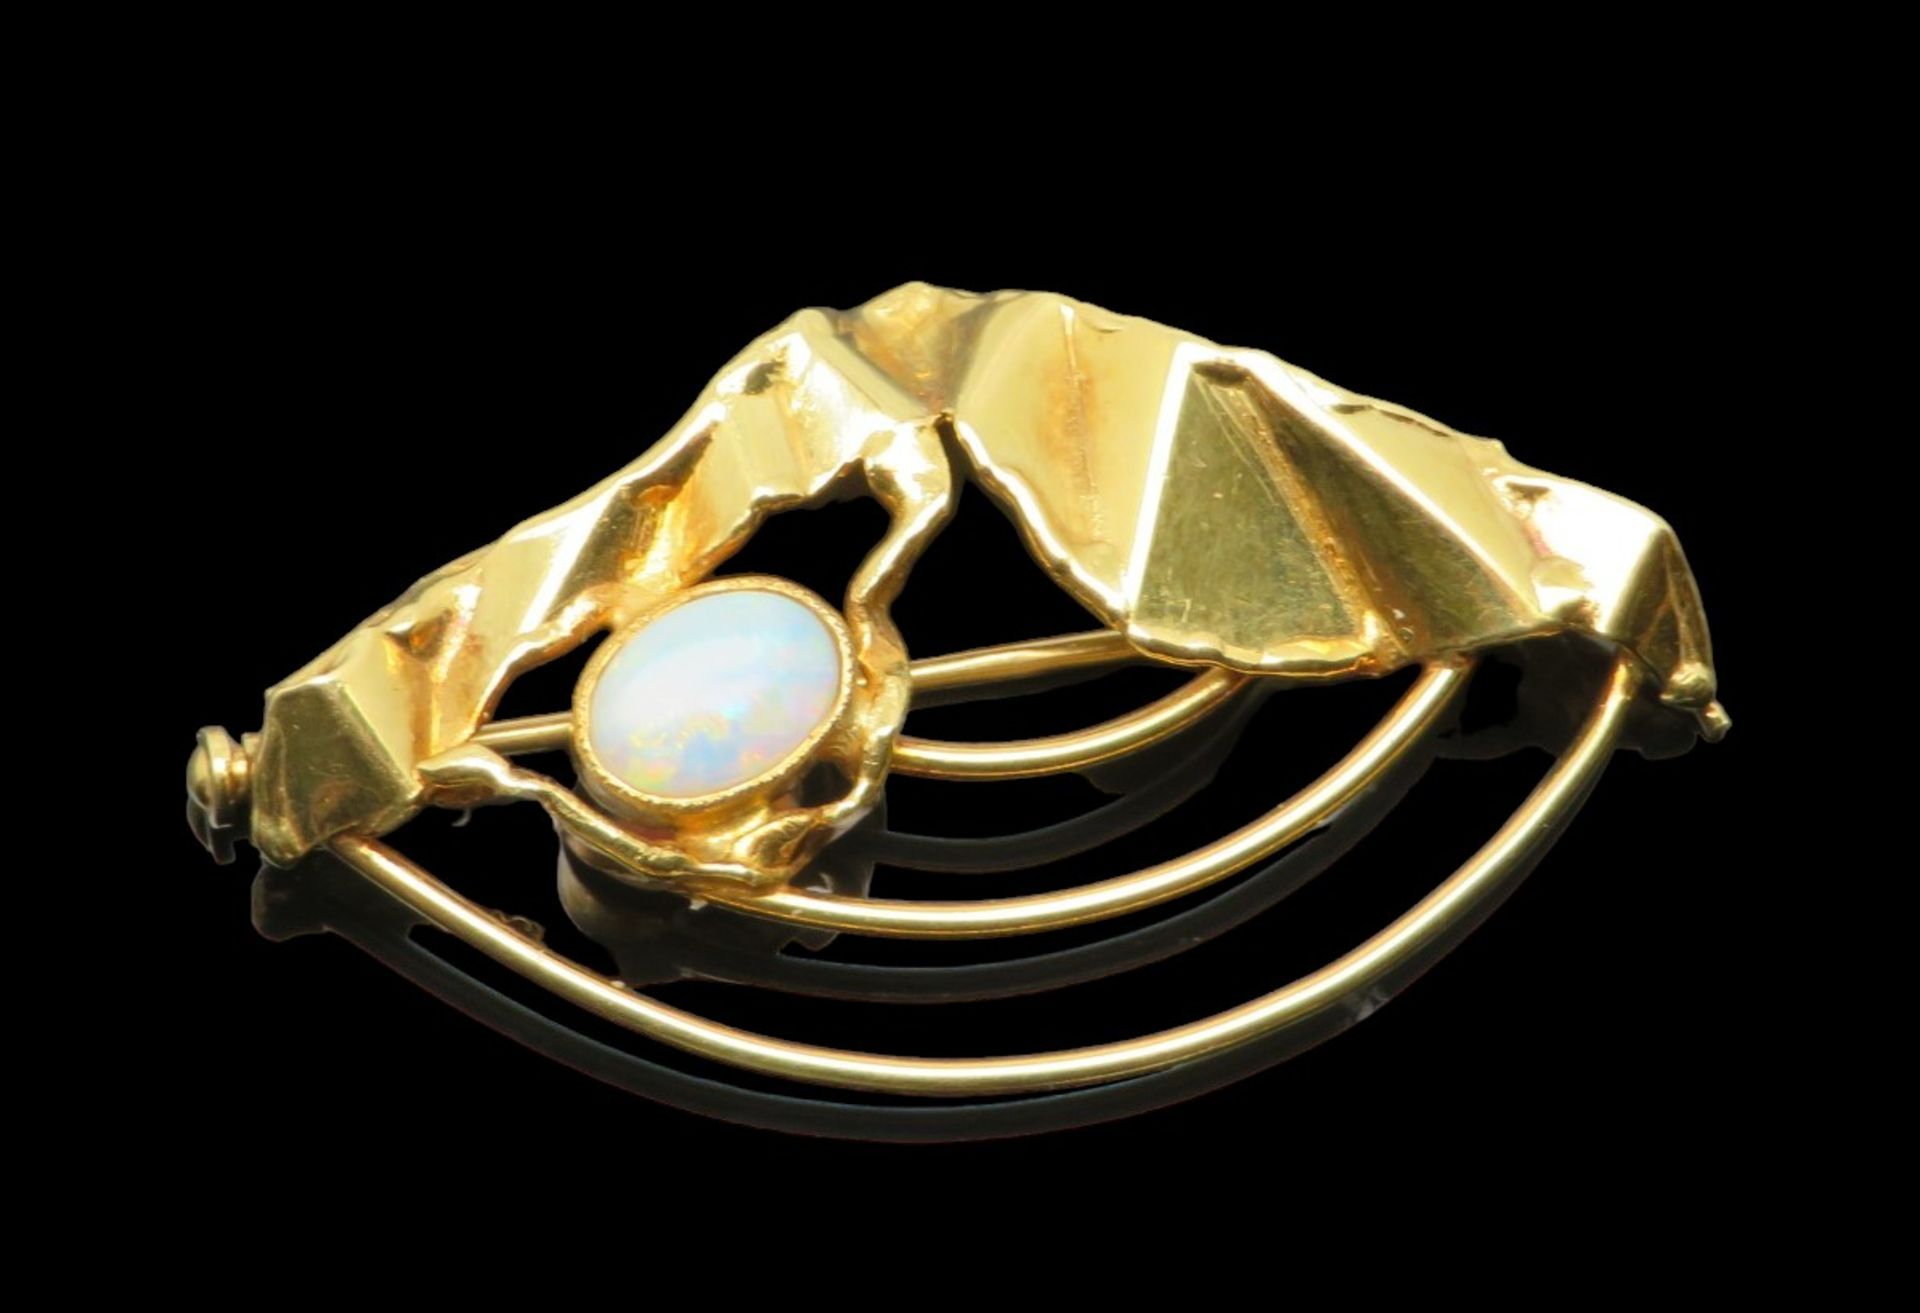 Moderne Brosche mit Opal-Cabochon, dachförmiges Element in Knitteroptik, davon ausgehend 3 gebogene